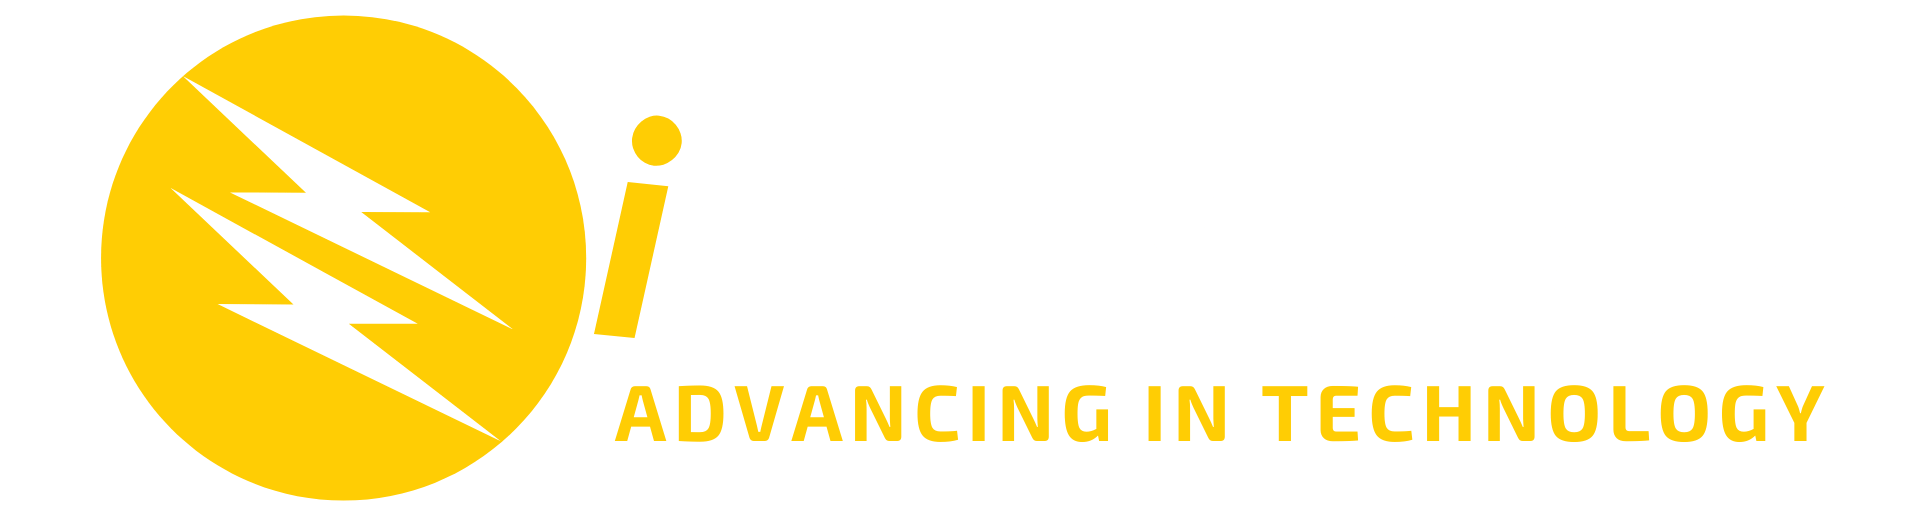 iBoostHub